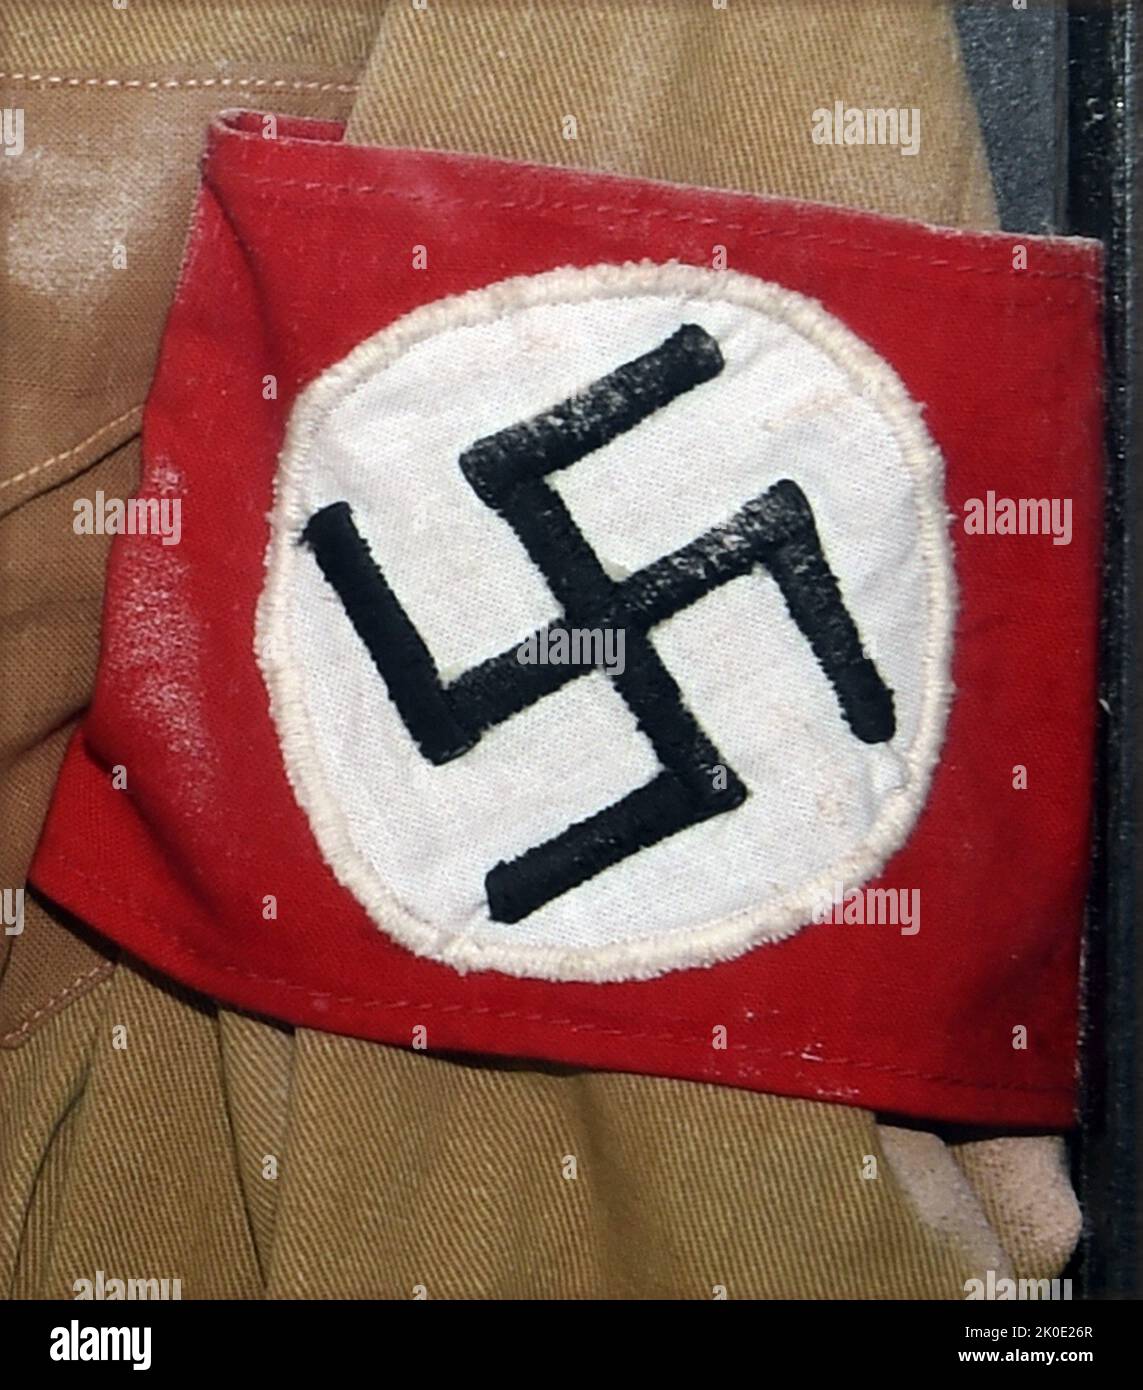 Hakenkreuzarmband eines SA-Soldaten der Brownshirts in Nazi-Deutschland, 1935. Stockfoto